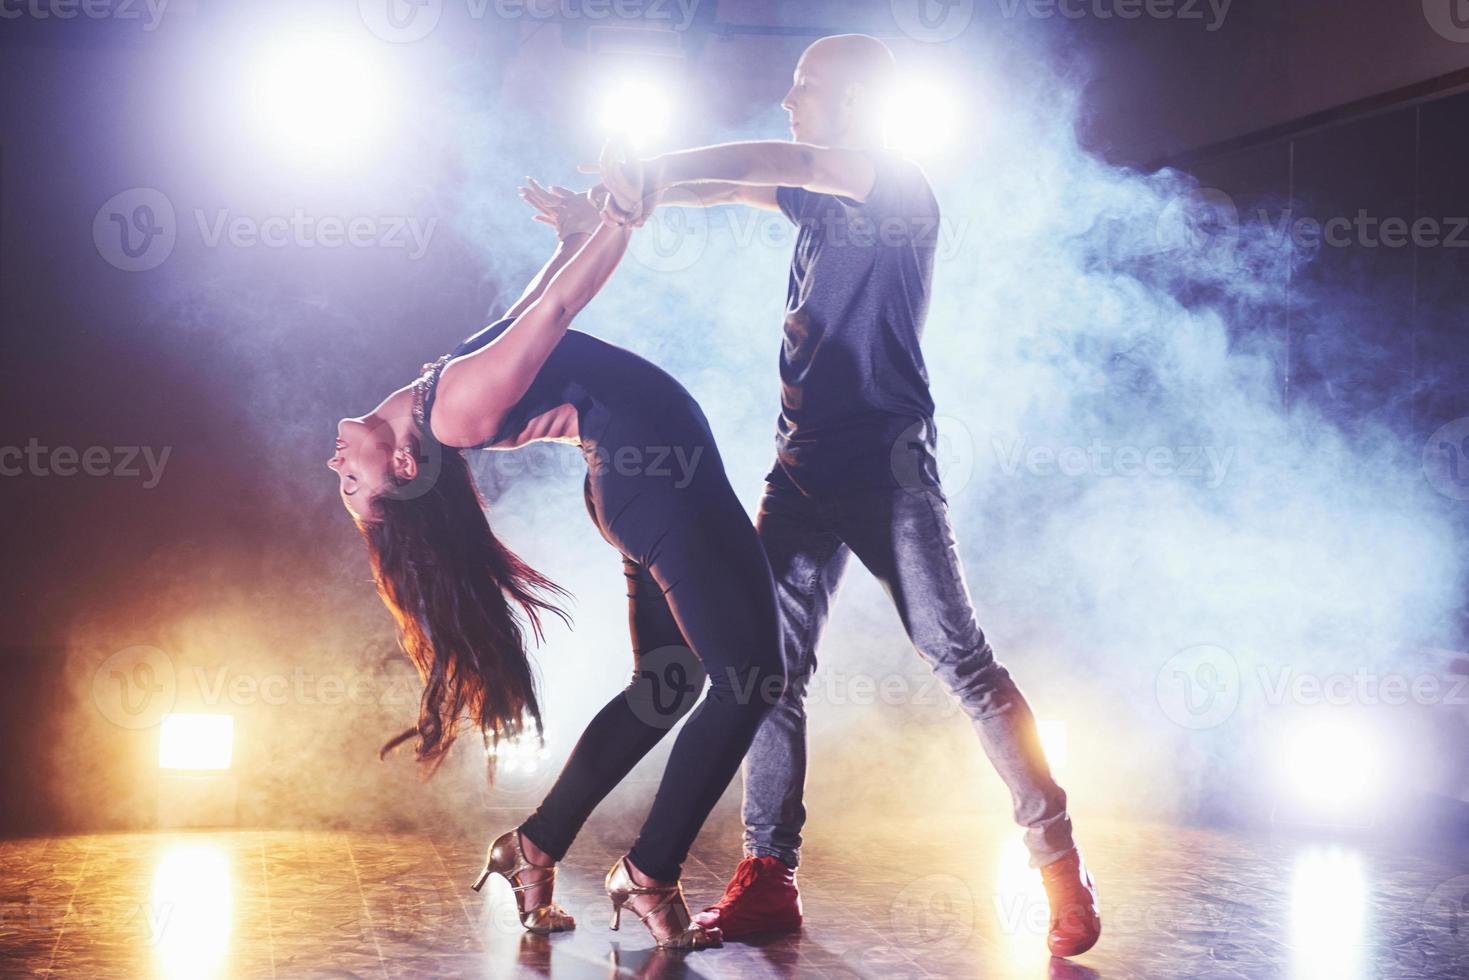 Geschickte Tänzer, die im dunklen Raum unter Konzertlicht und Rauch auftreten. sinnliches Paar, das einen künstlerischen und emotionalen zeitgenössischen Tanz aufführt foto